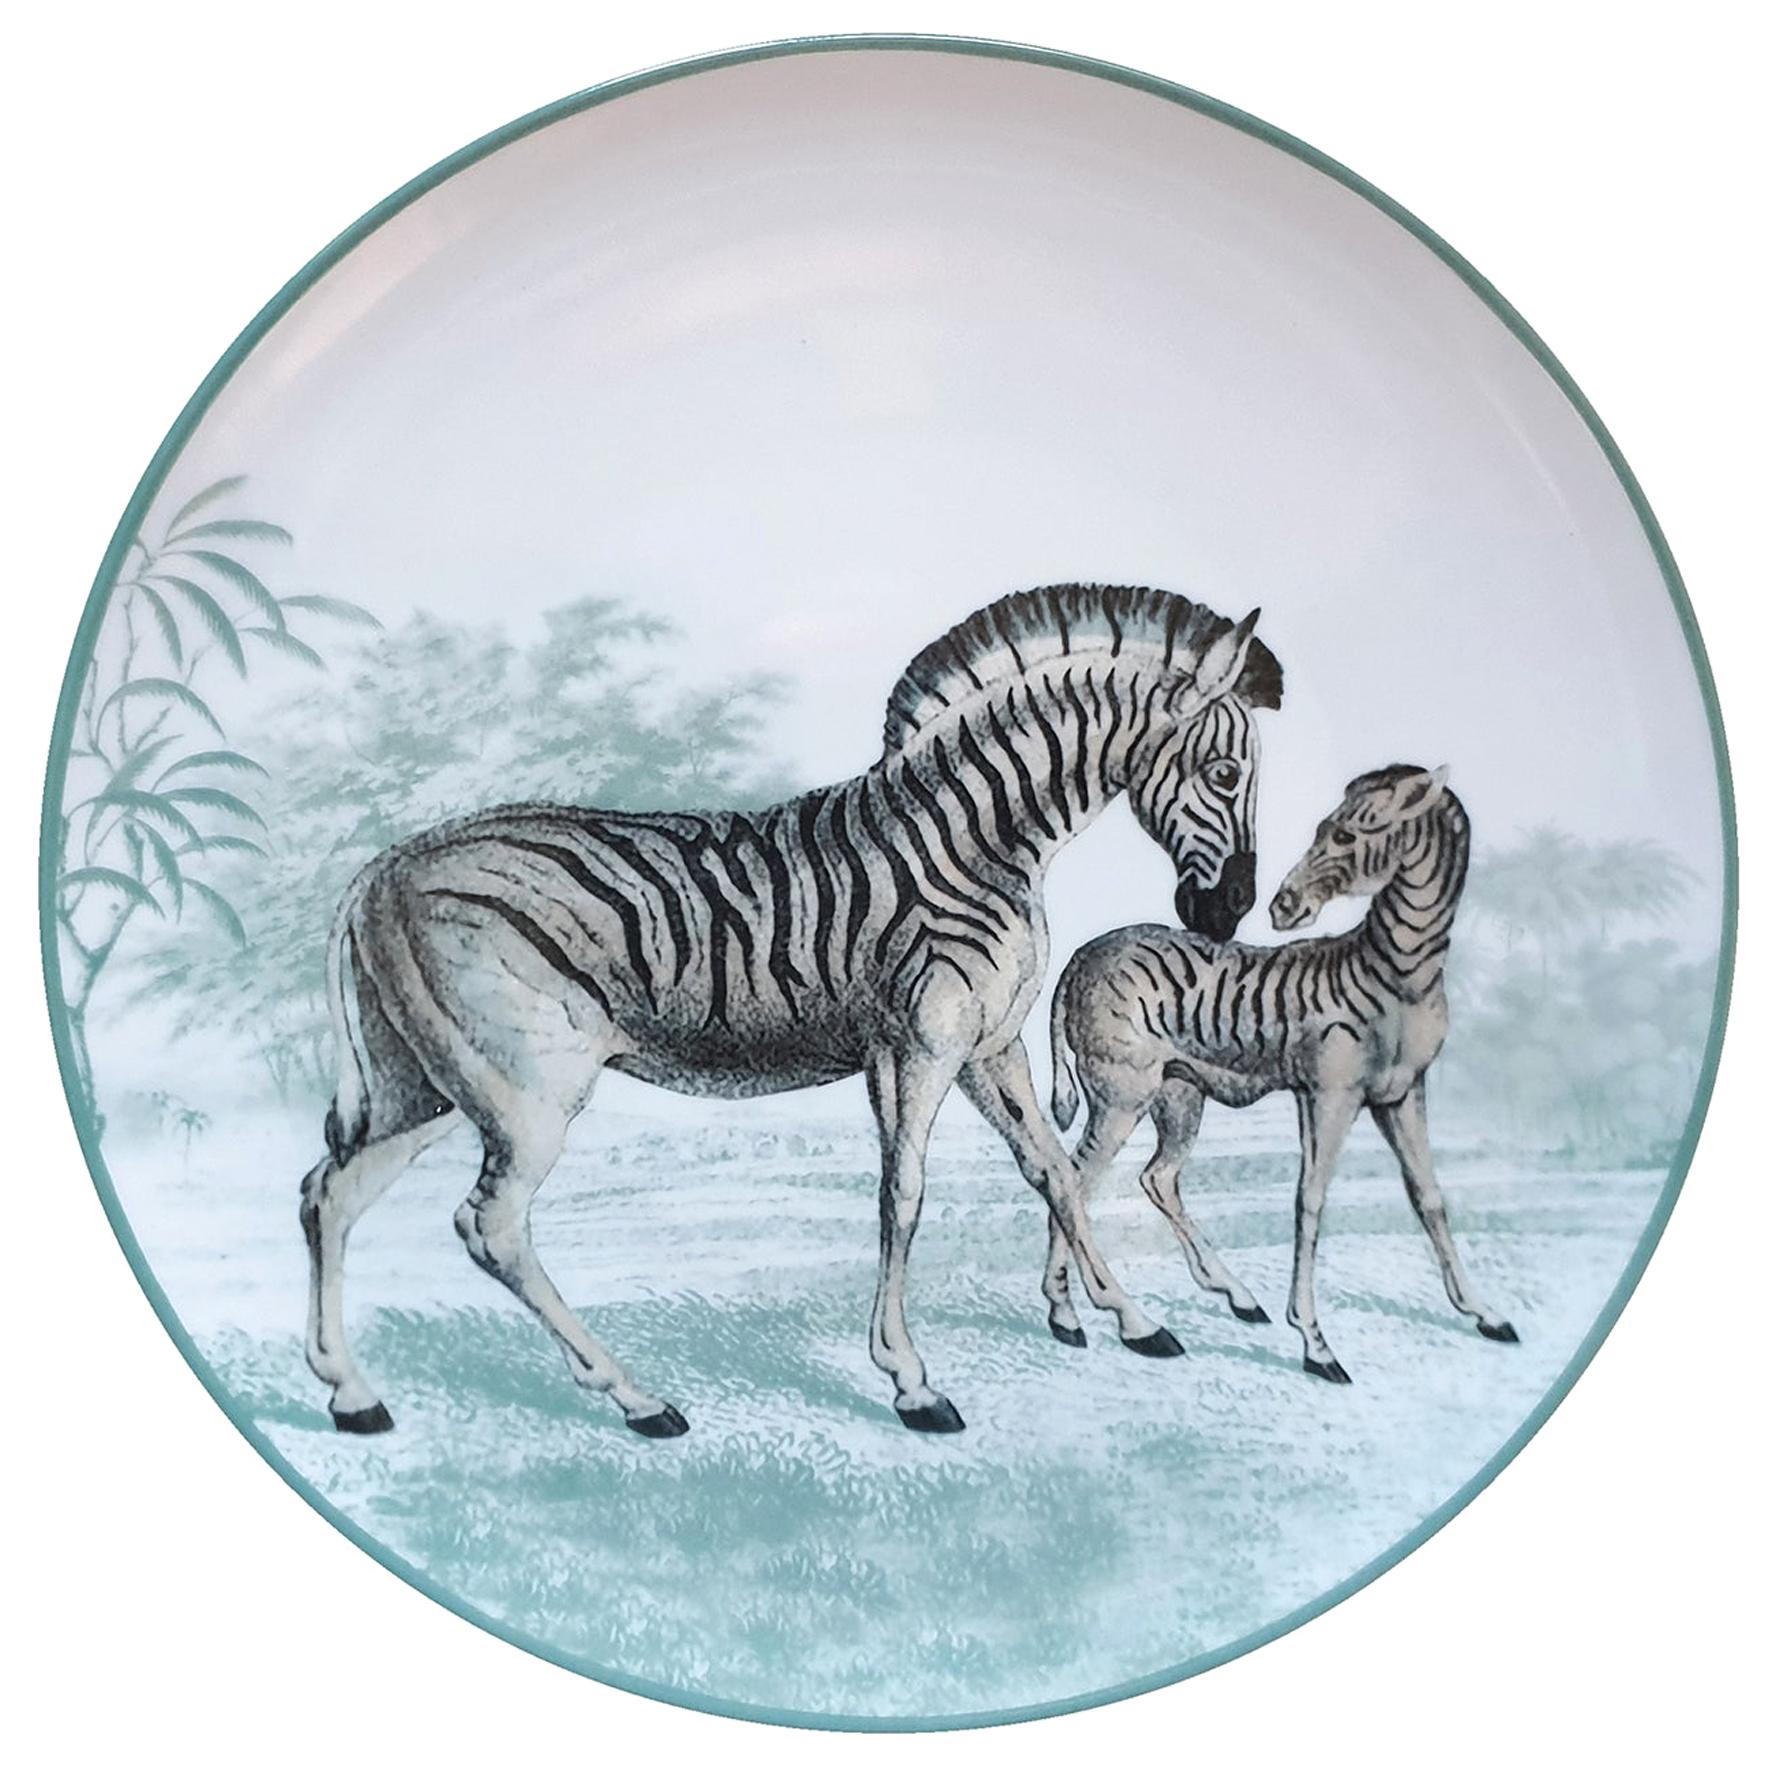 La Menagerie Ottomane Zebras Porcelain Dinner Plate Handmade in Italy